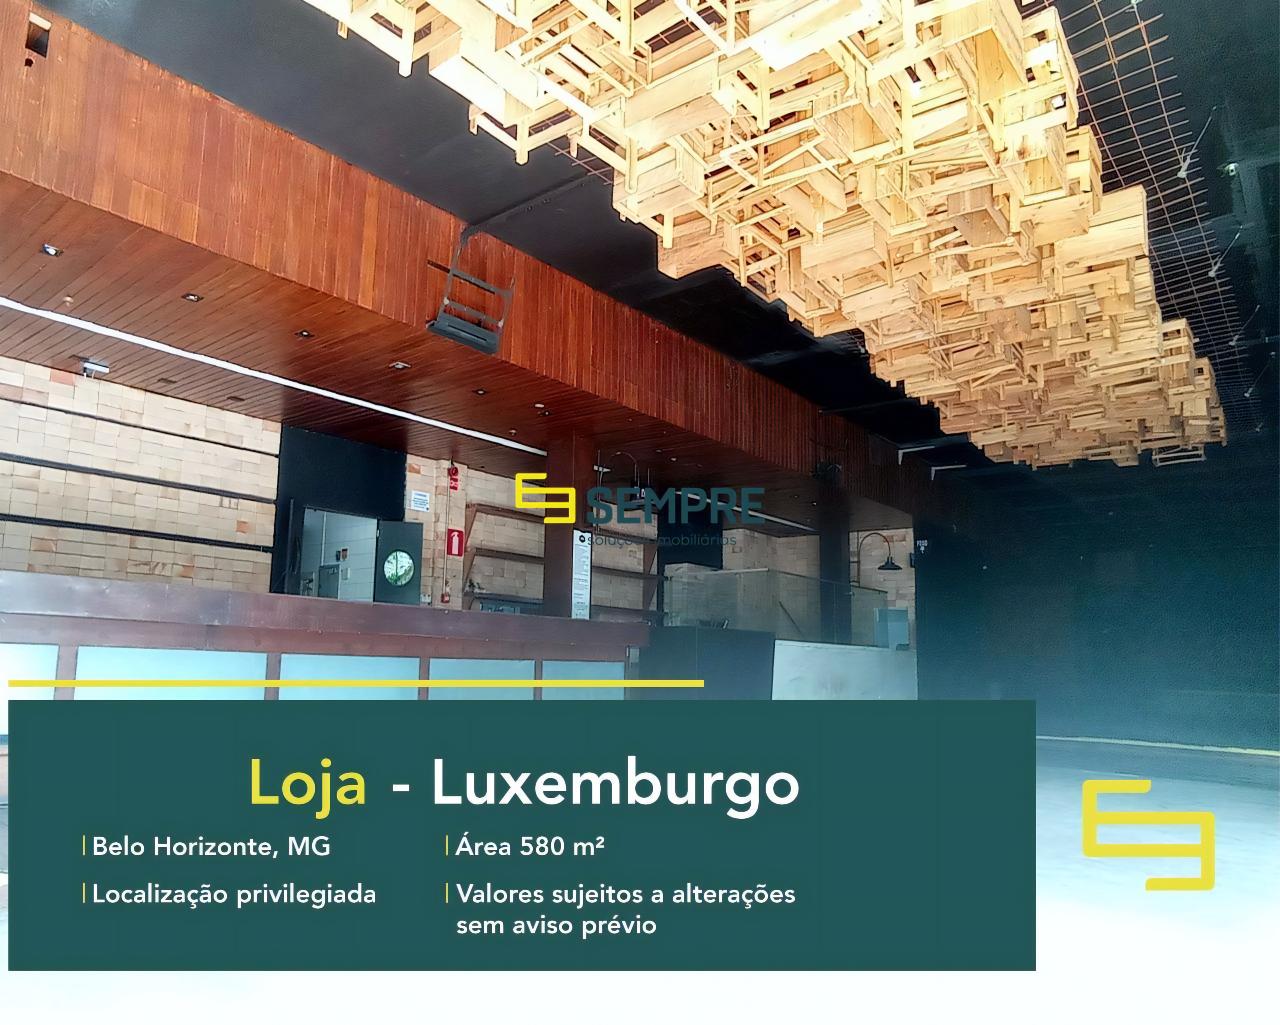 Loja no Luxemburgo para alugar em Belo Horizonte, excelente localização. O estabelecimento comercial conta com área de 580 m².